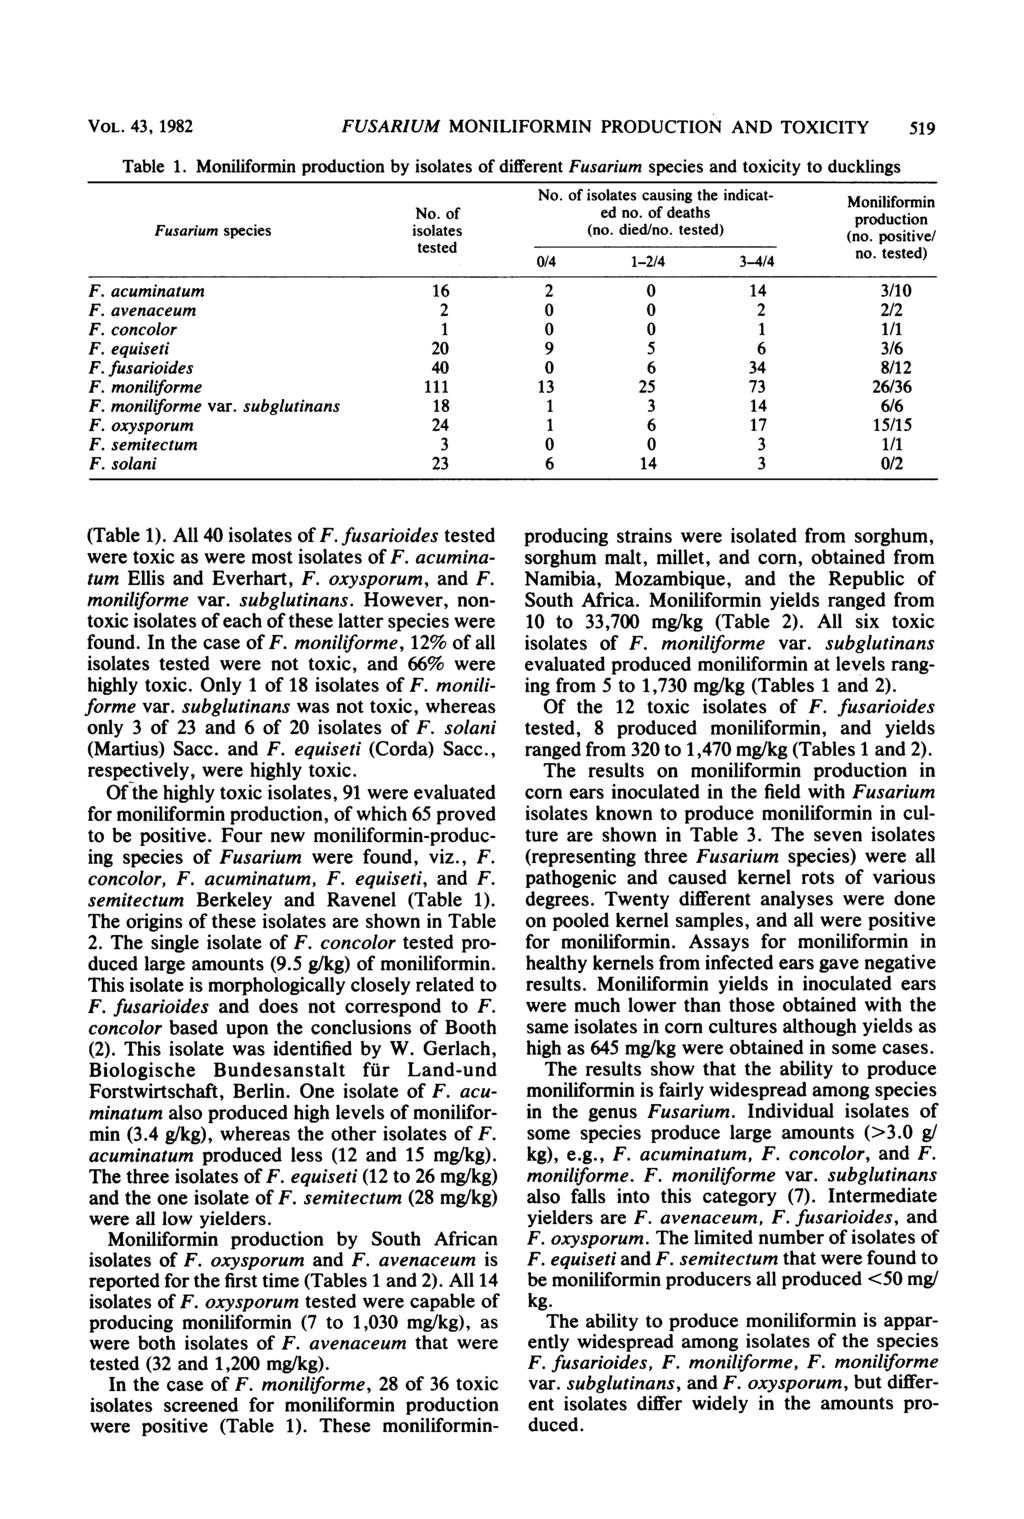 VOL. 43, 1982 Table 1. FUSARIUM MONILIFORMIN PRODUCTION AND TOXICITY 519 Moniliformin production by isolates of different Fusarium species and toxicity to ducklings No.